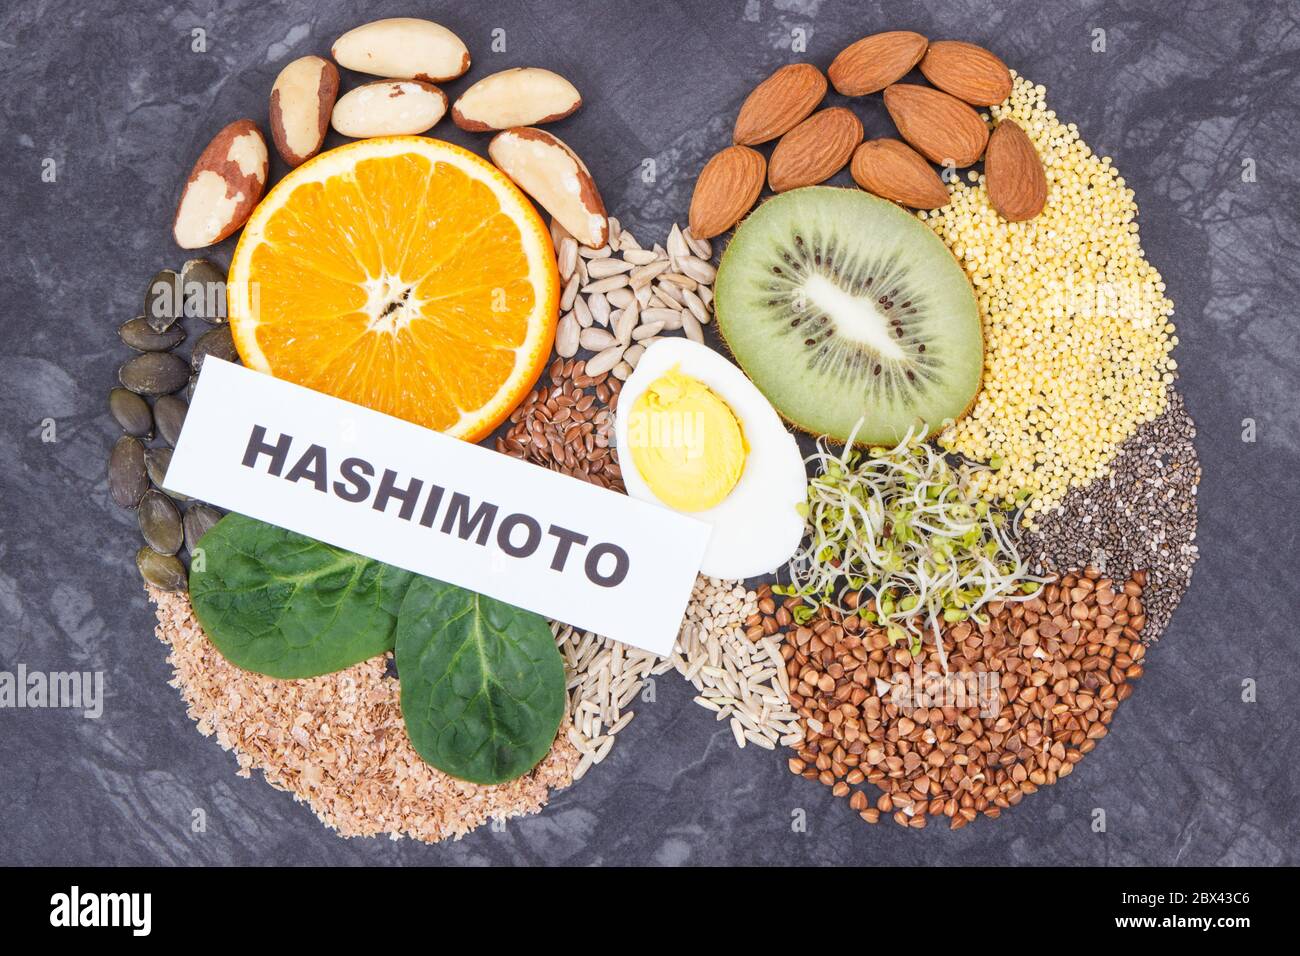 Inschrift hashimoto mit nahrhaften natürlichen Zutaten, Obst und Gemüse in  Form von Schilddrüse. Gesunde Lebensmittel mit Vitaminen und Mineralstoffen  Stockfotografie - Alamy